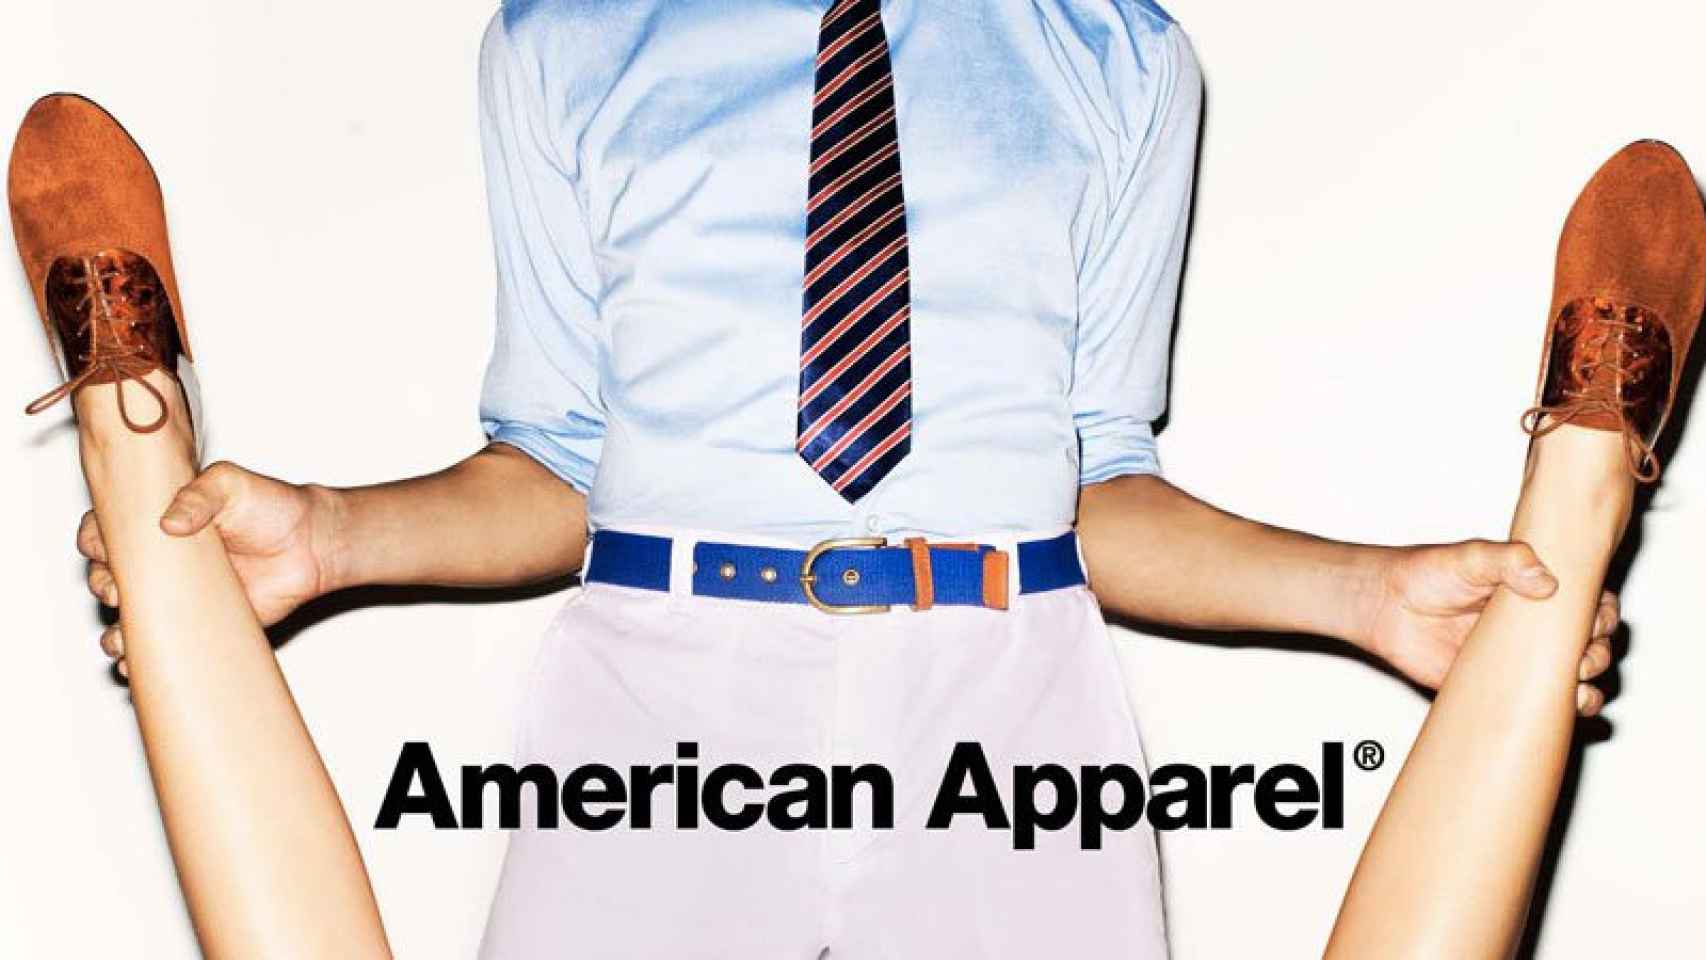 American Apparel es conocida por sus polémcias campañas publicitarias